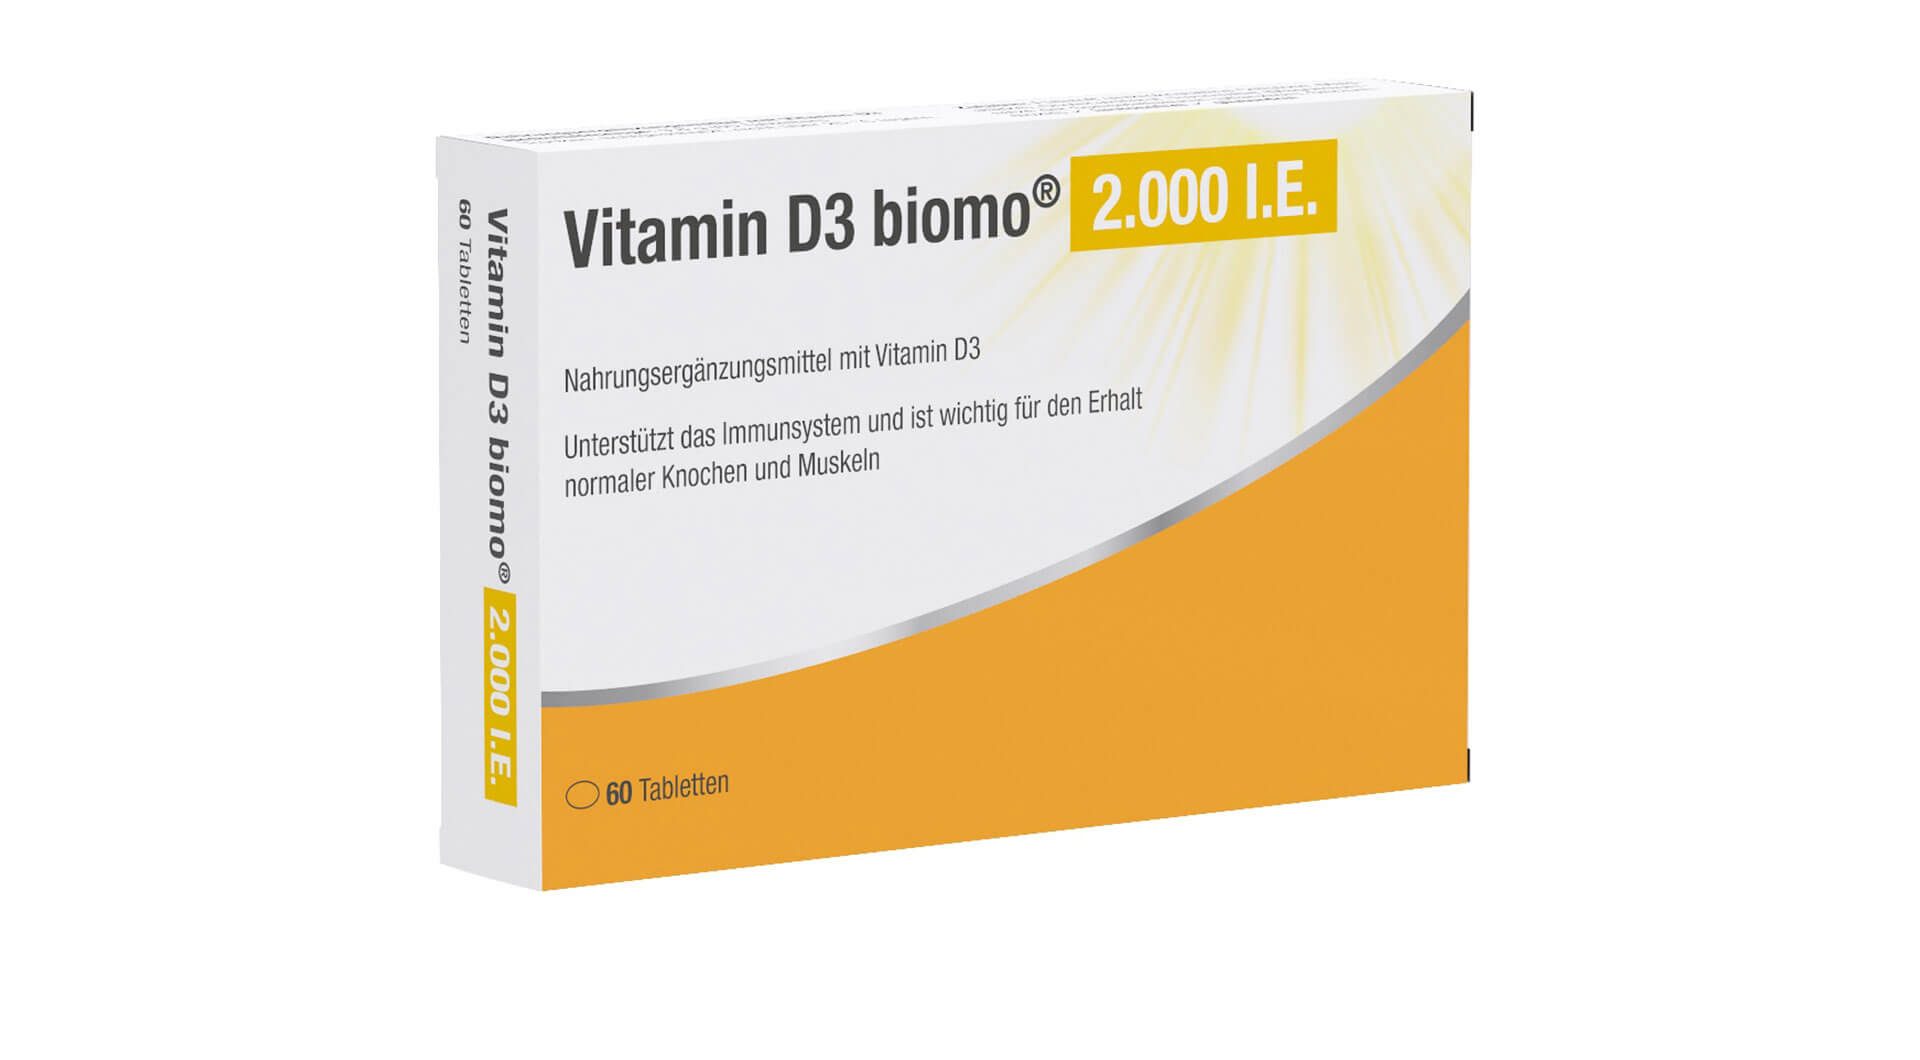 Vitamin D3 biomo 2.000 I.E.